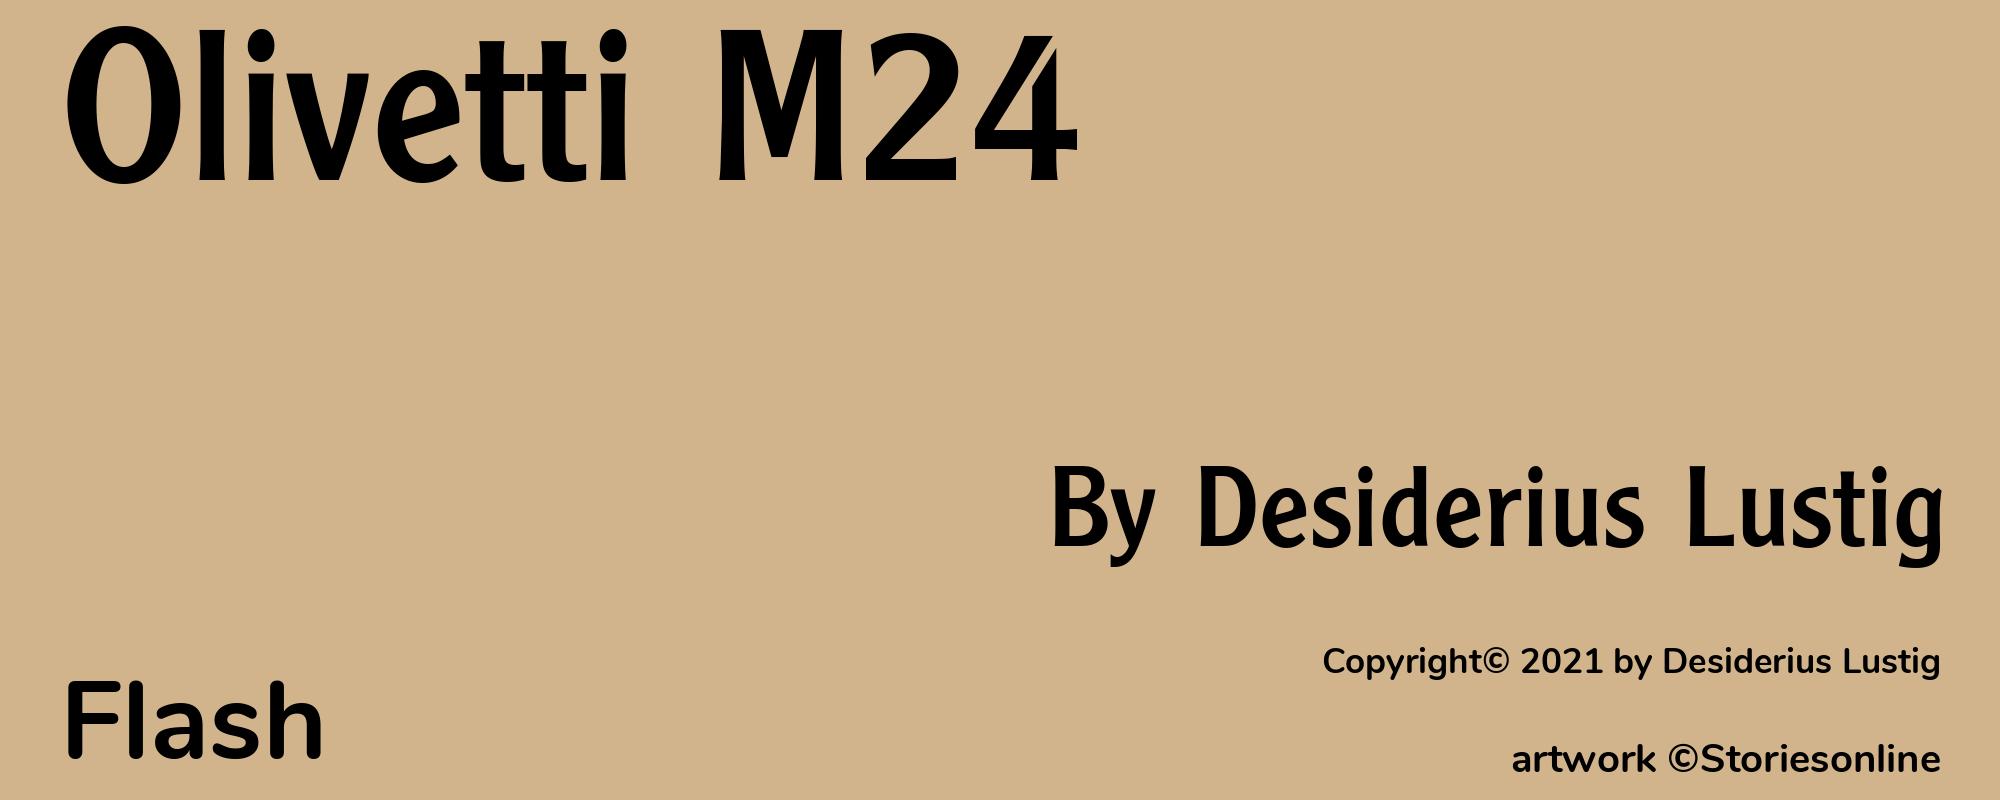 Olivetti M24 - Cover